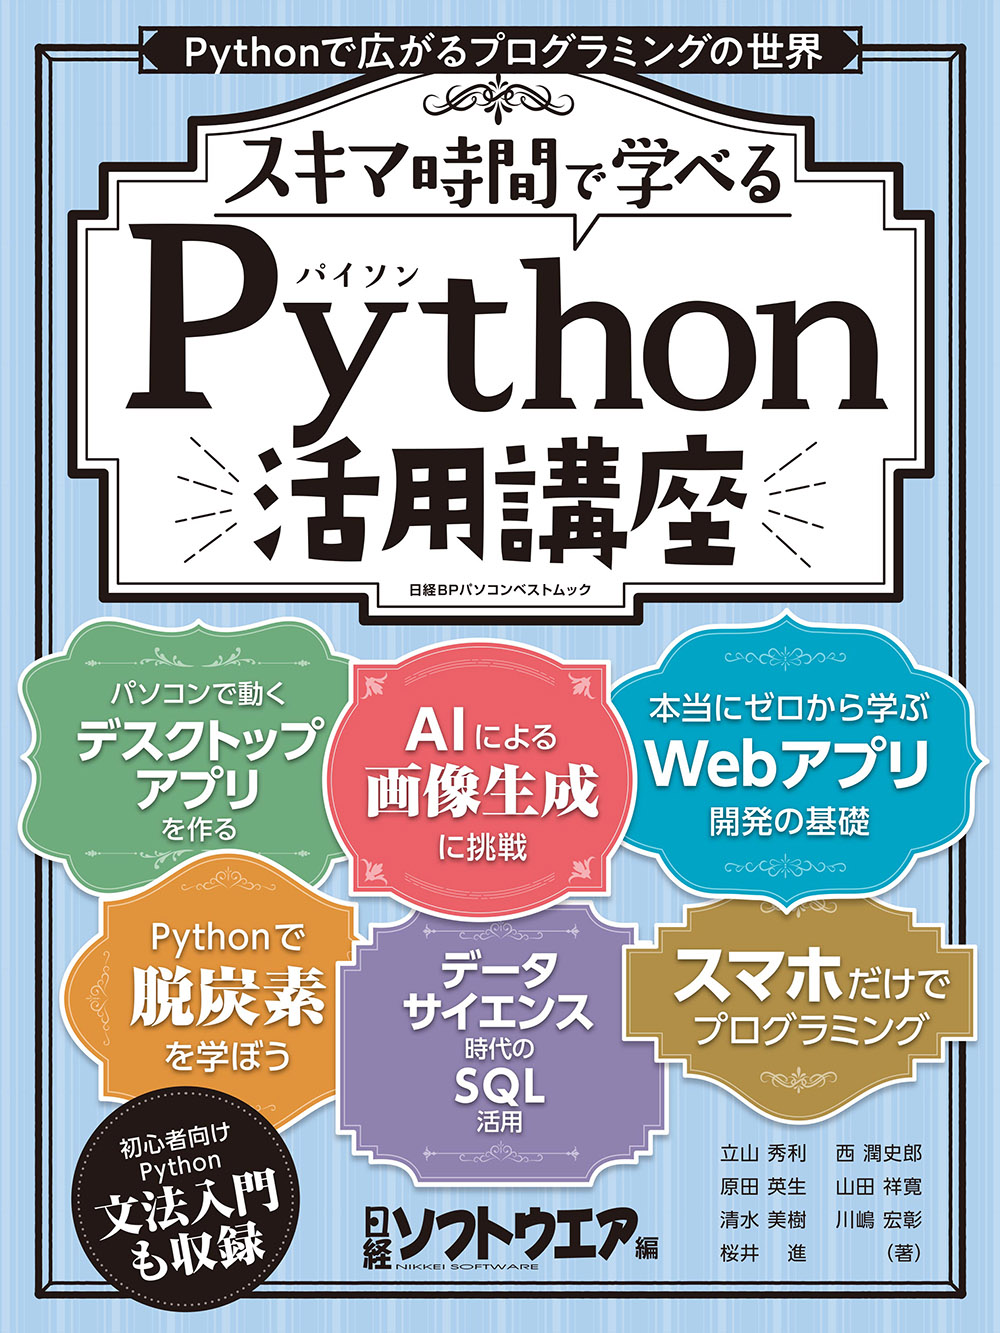 スキマ時間で学べる Python活用講座 日経bookプラス